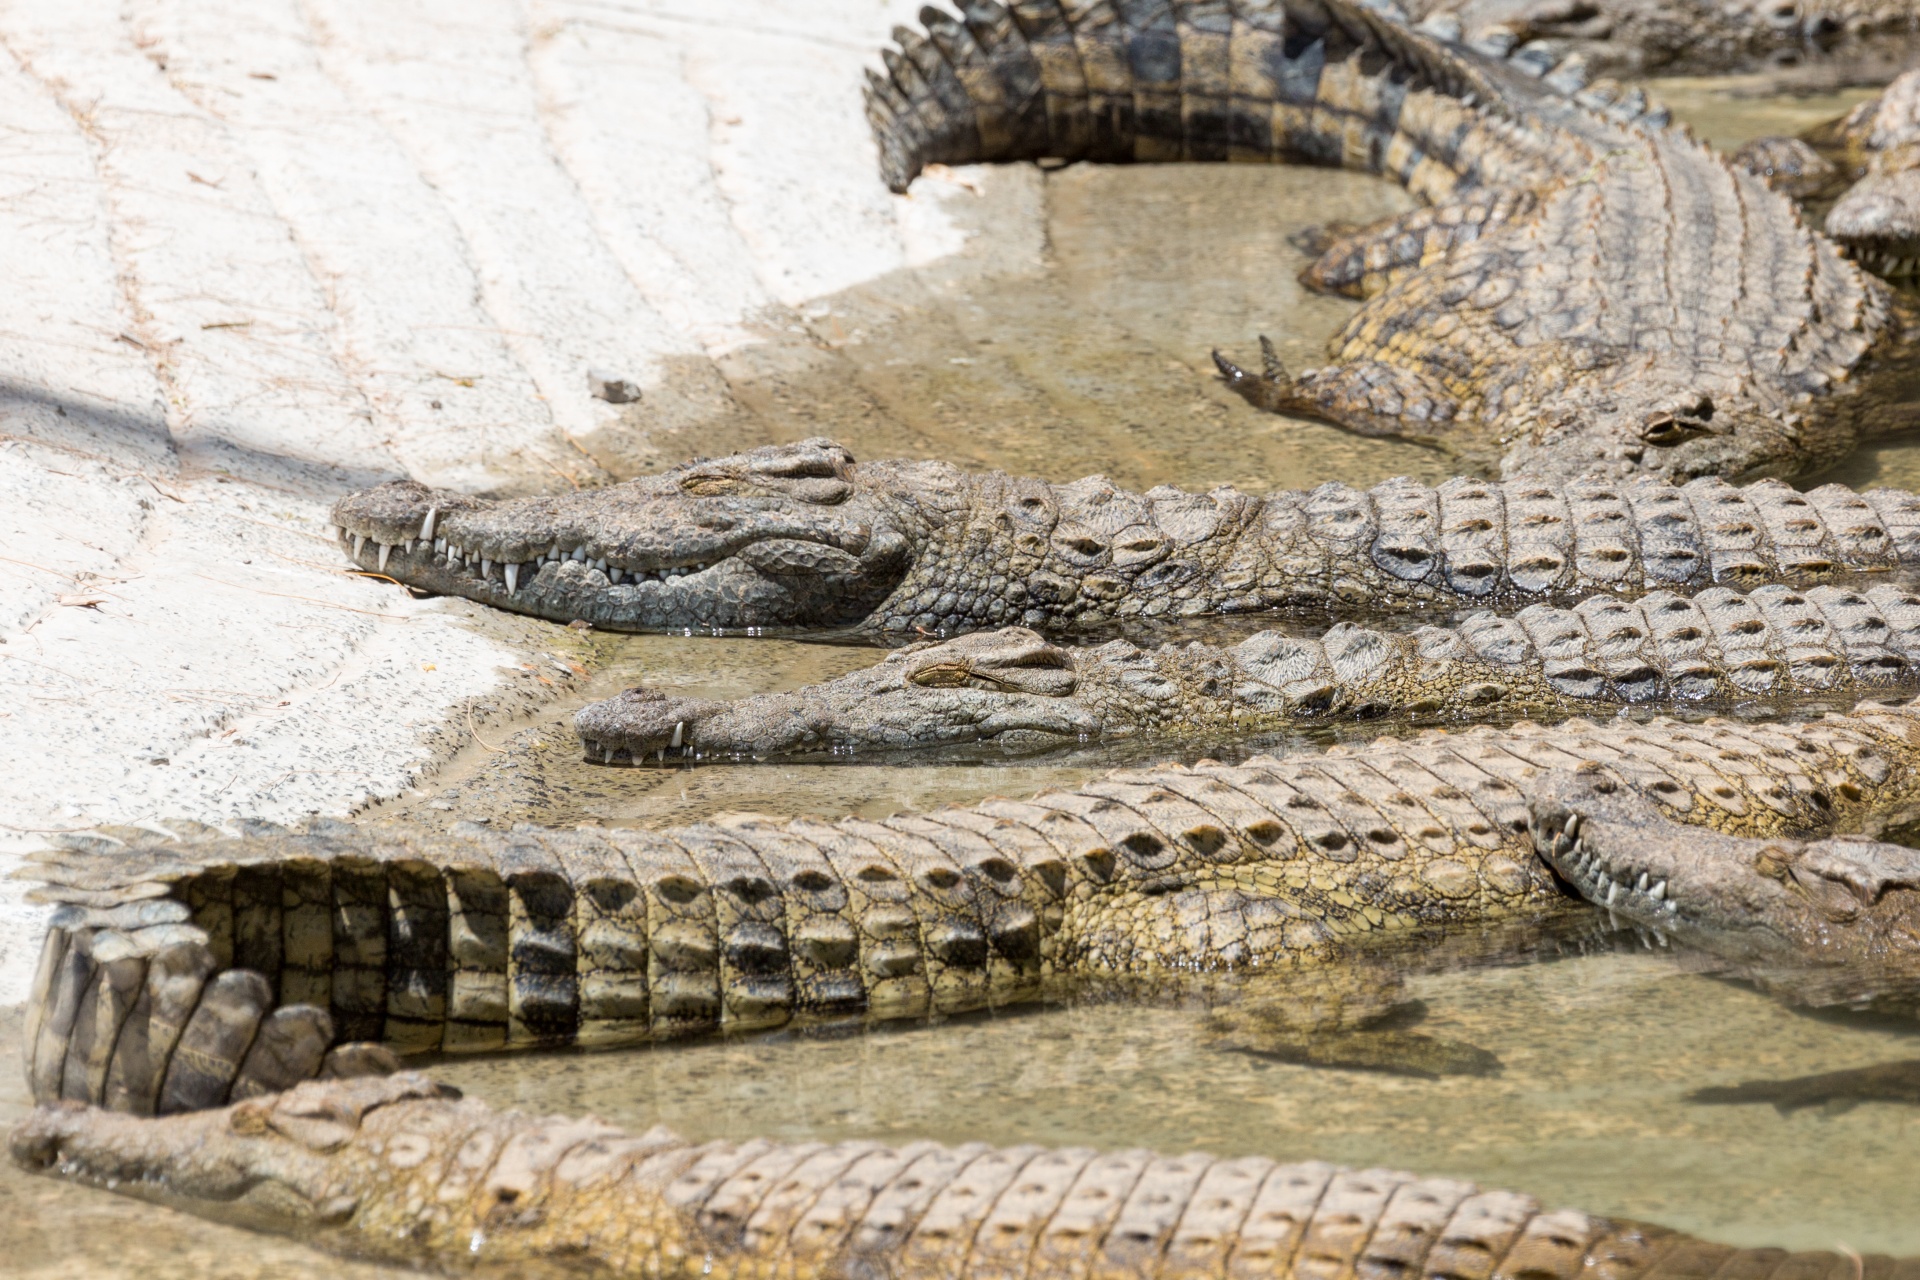 Opalanie krokodyli